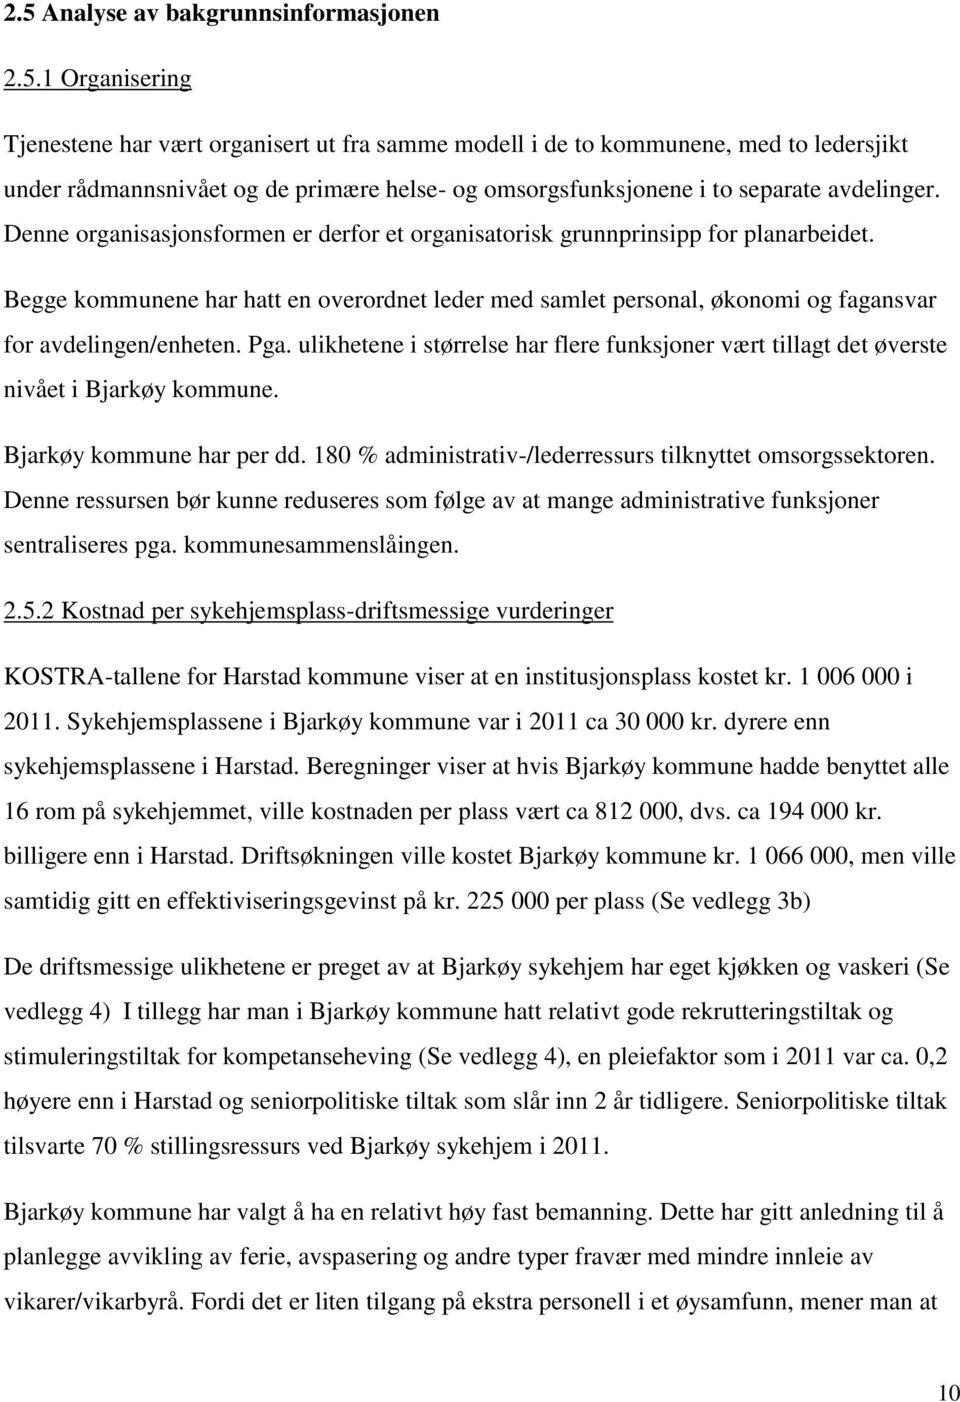 Pga. ulikhetene i størrelse har flere funksjoner vært tillagt det øverste nivået i Bjarkøy kommune. Bjarkøy kommune har per dd. 180 % administrativ-/lederressurs tilknyttet omsorgssektoren.